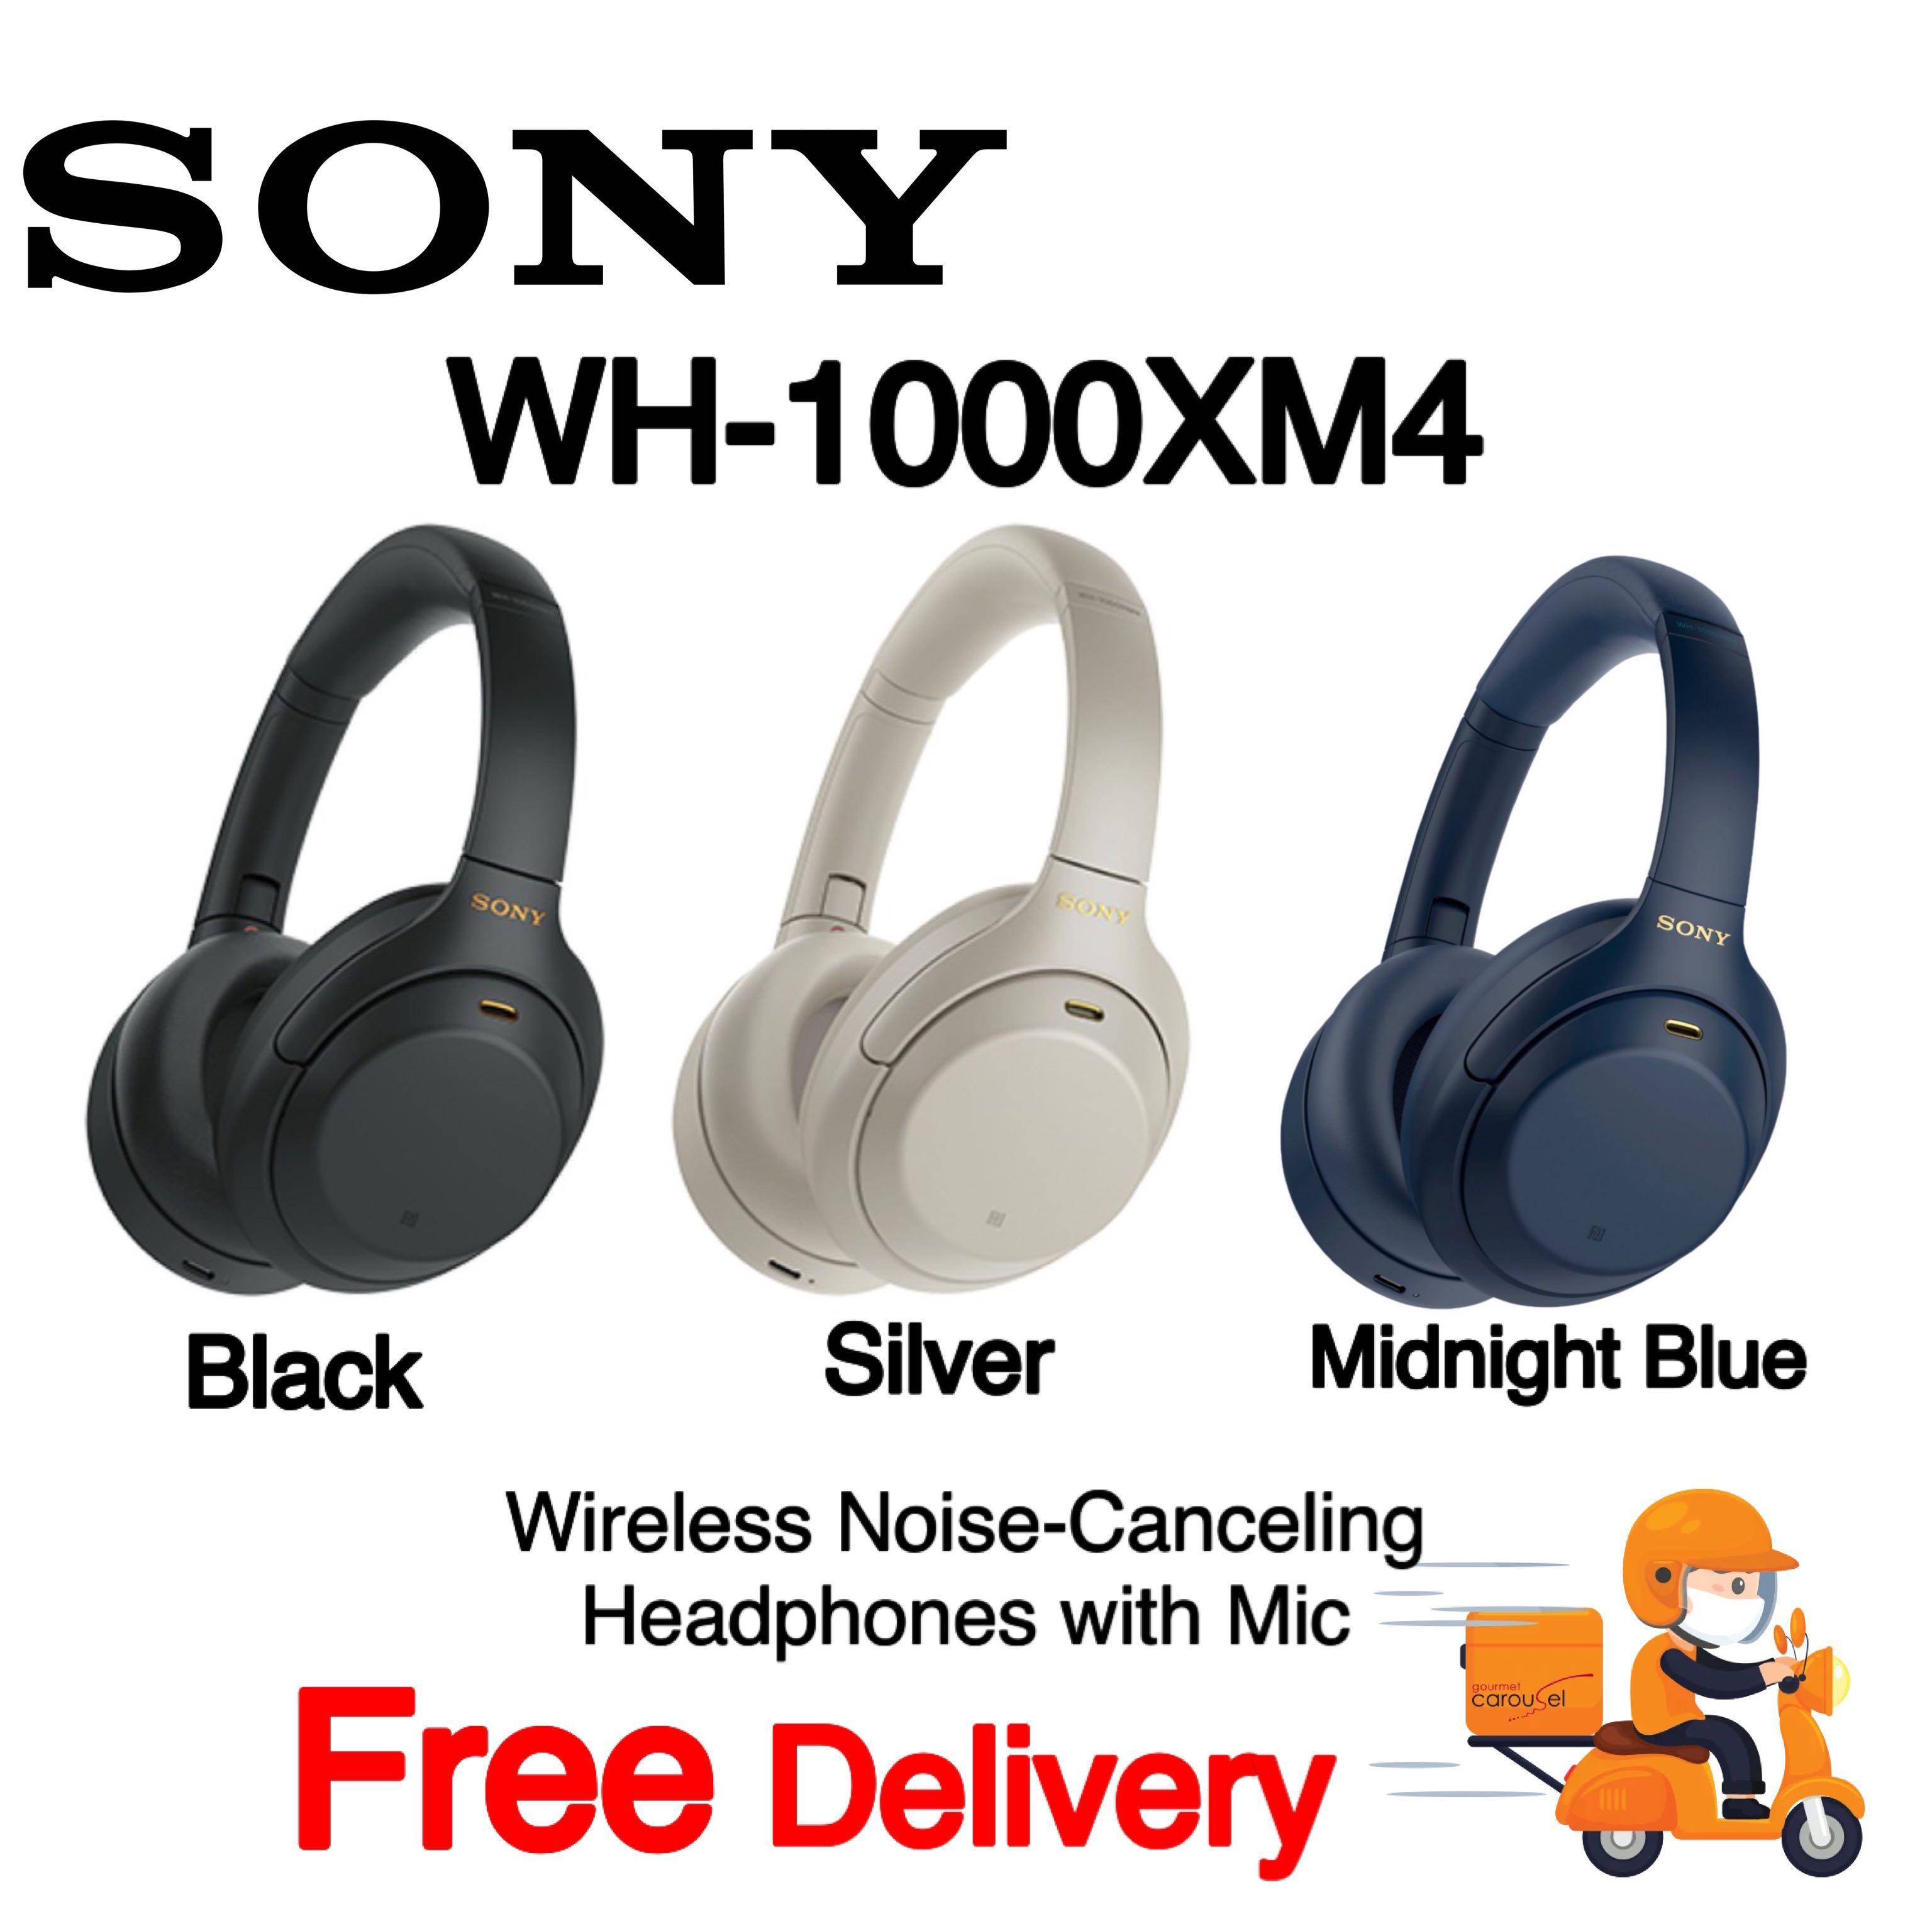 正規品正規販売店 SONY blue midnight WH-1000XM4 ヘッドフォン